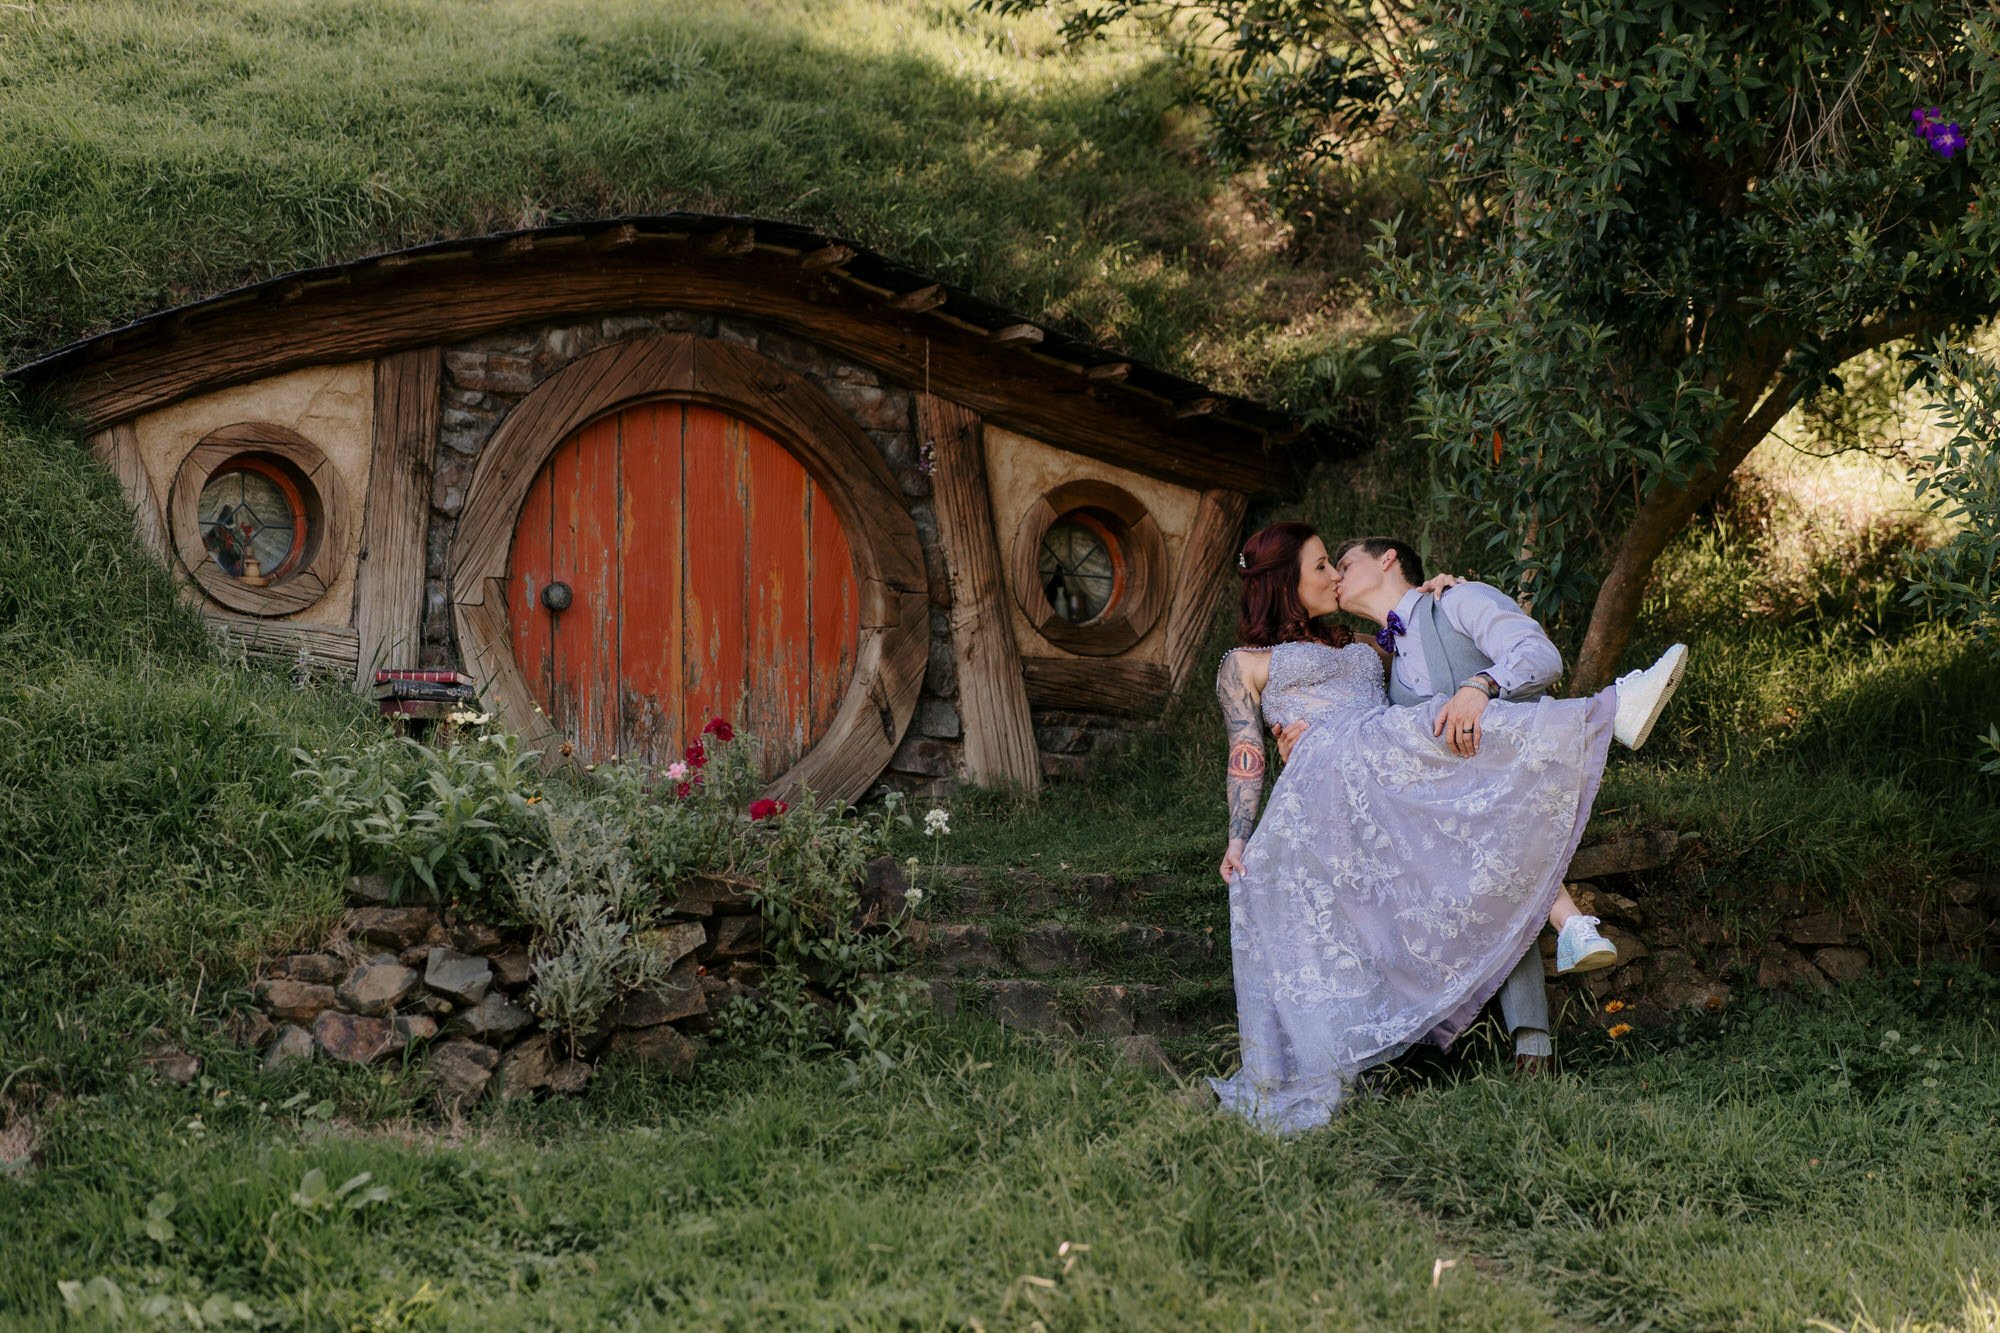 hobbiton-tour-matamata-best-wedding-venue-top-photographer-auckland-videography-elopement-unique-hobbit-destination-dear-white-productions (200).JPG